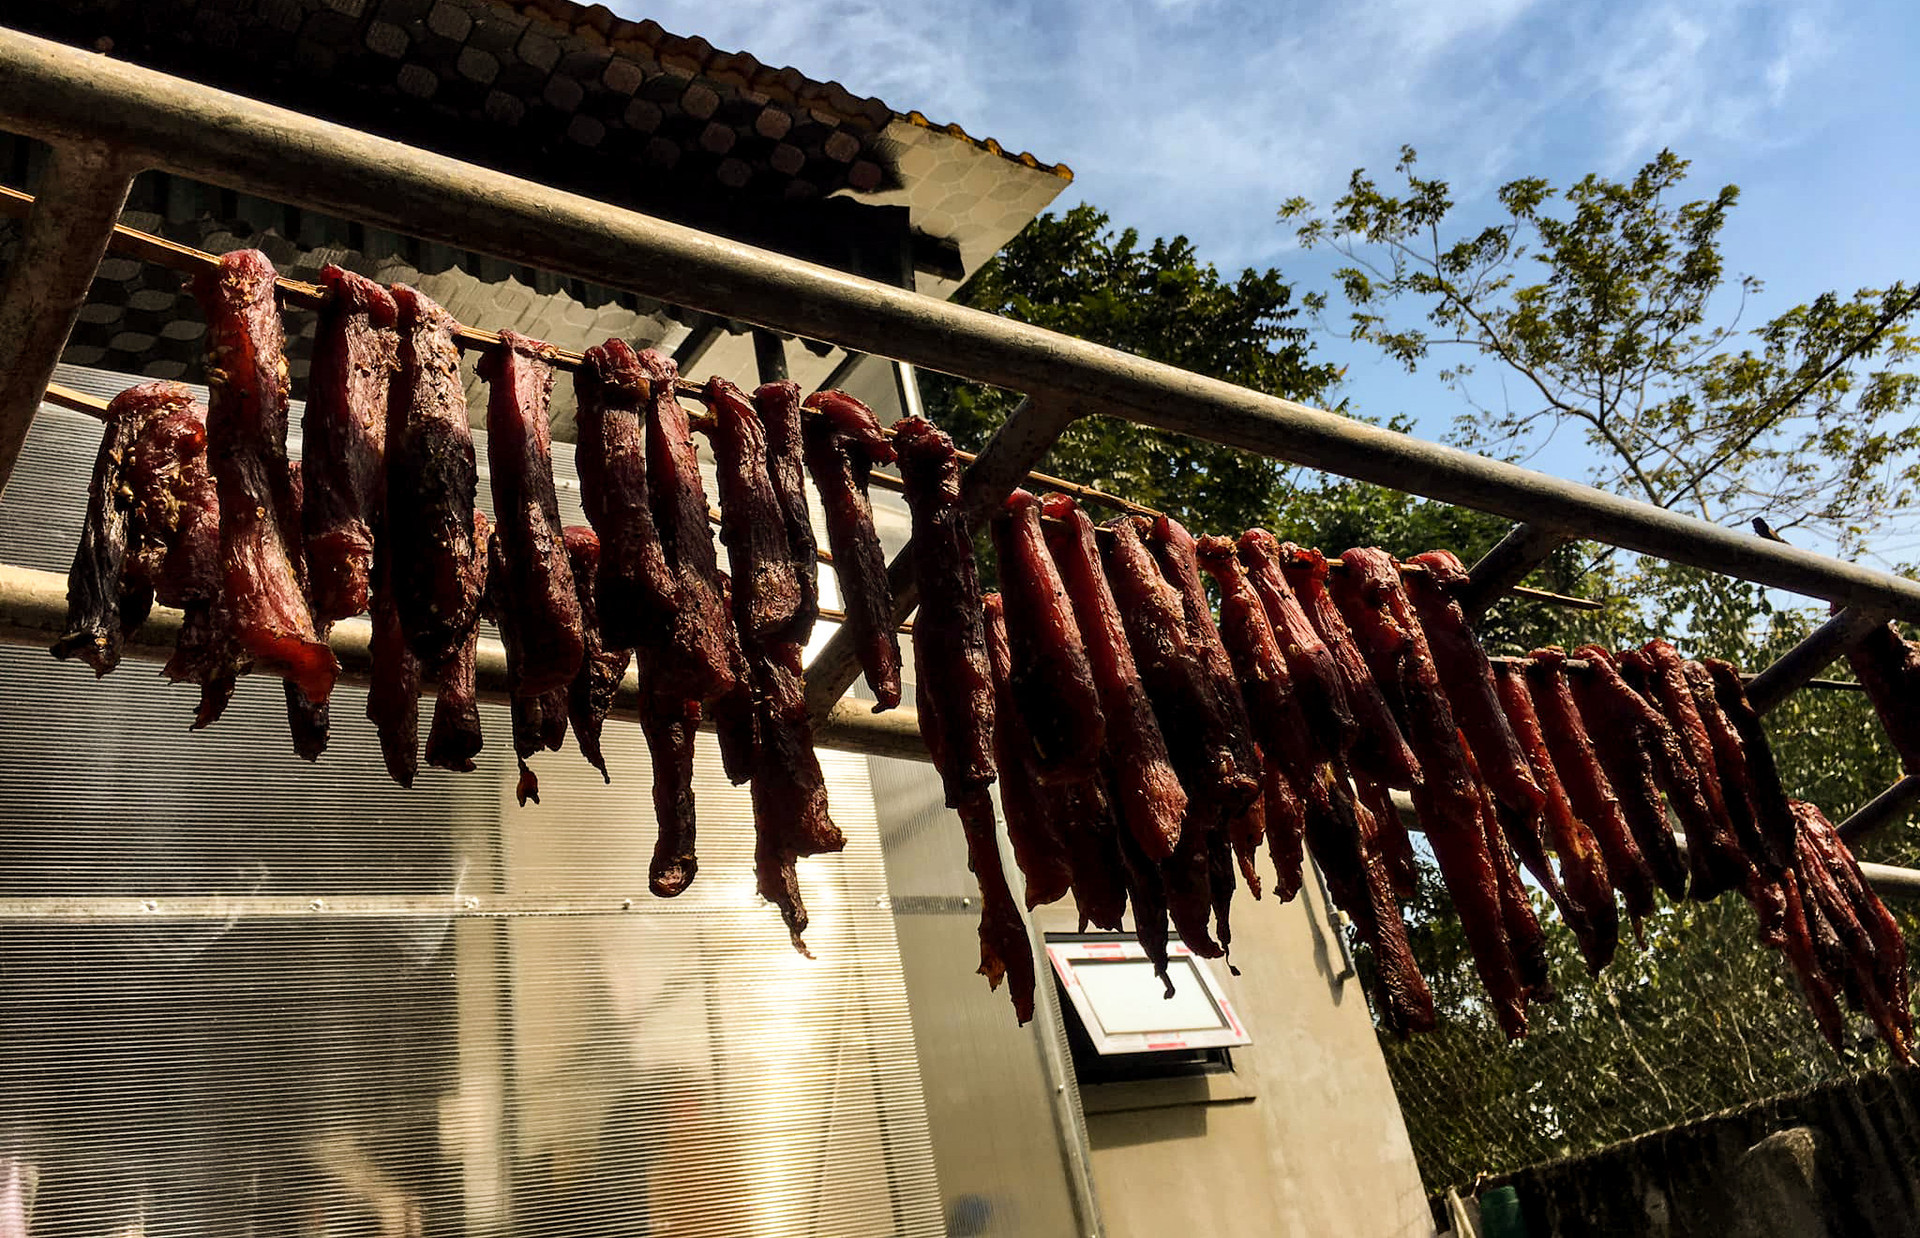 Thịt hun khói của người dân tộc trở thành đặc sản của người phố thị